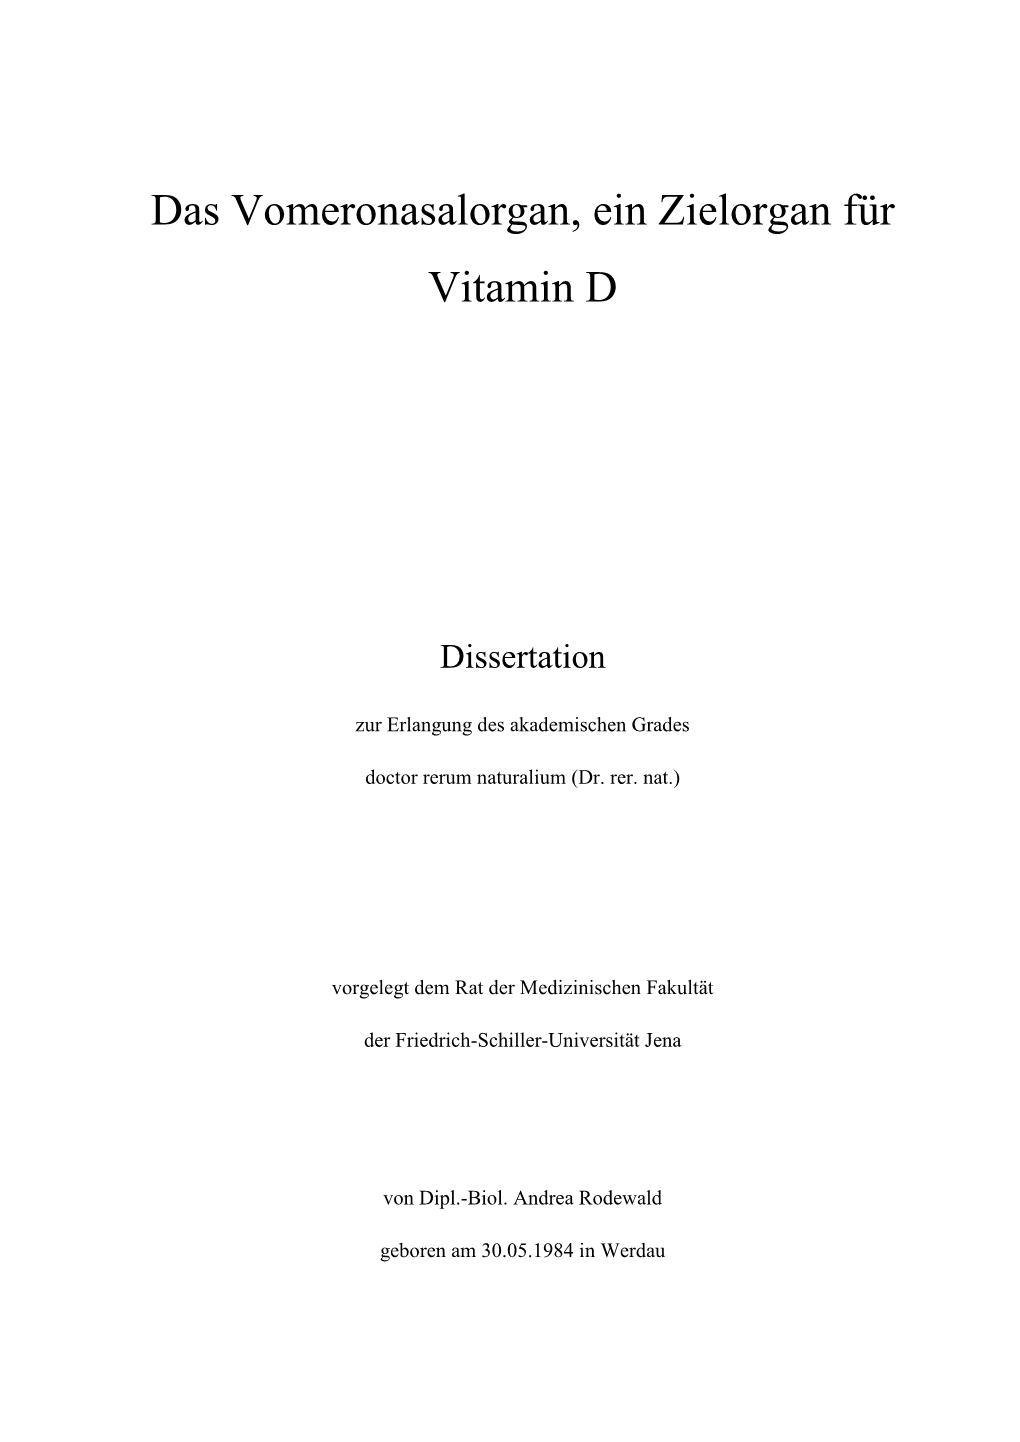 Das Vomeronasalorgan, Ein Zielorgan Für Vitamin D